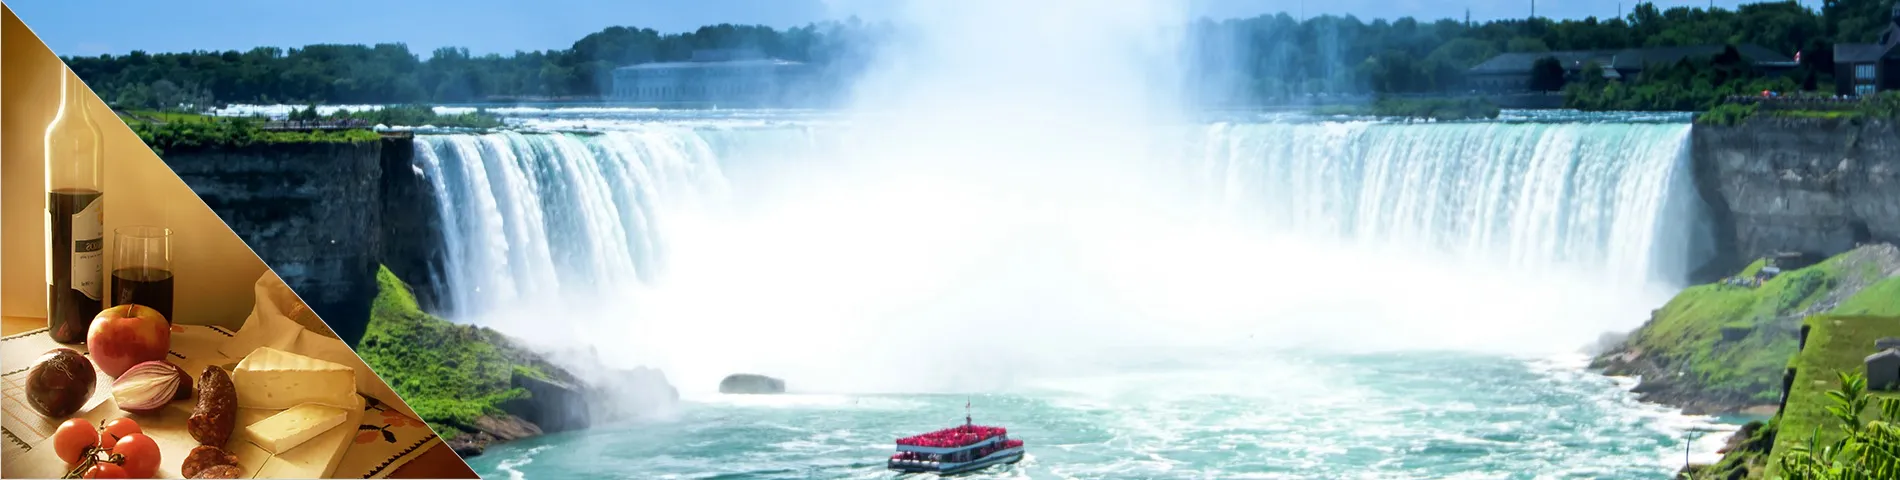 Welland (Niagarafälle) - Englisch & Kultur